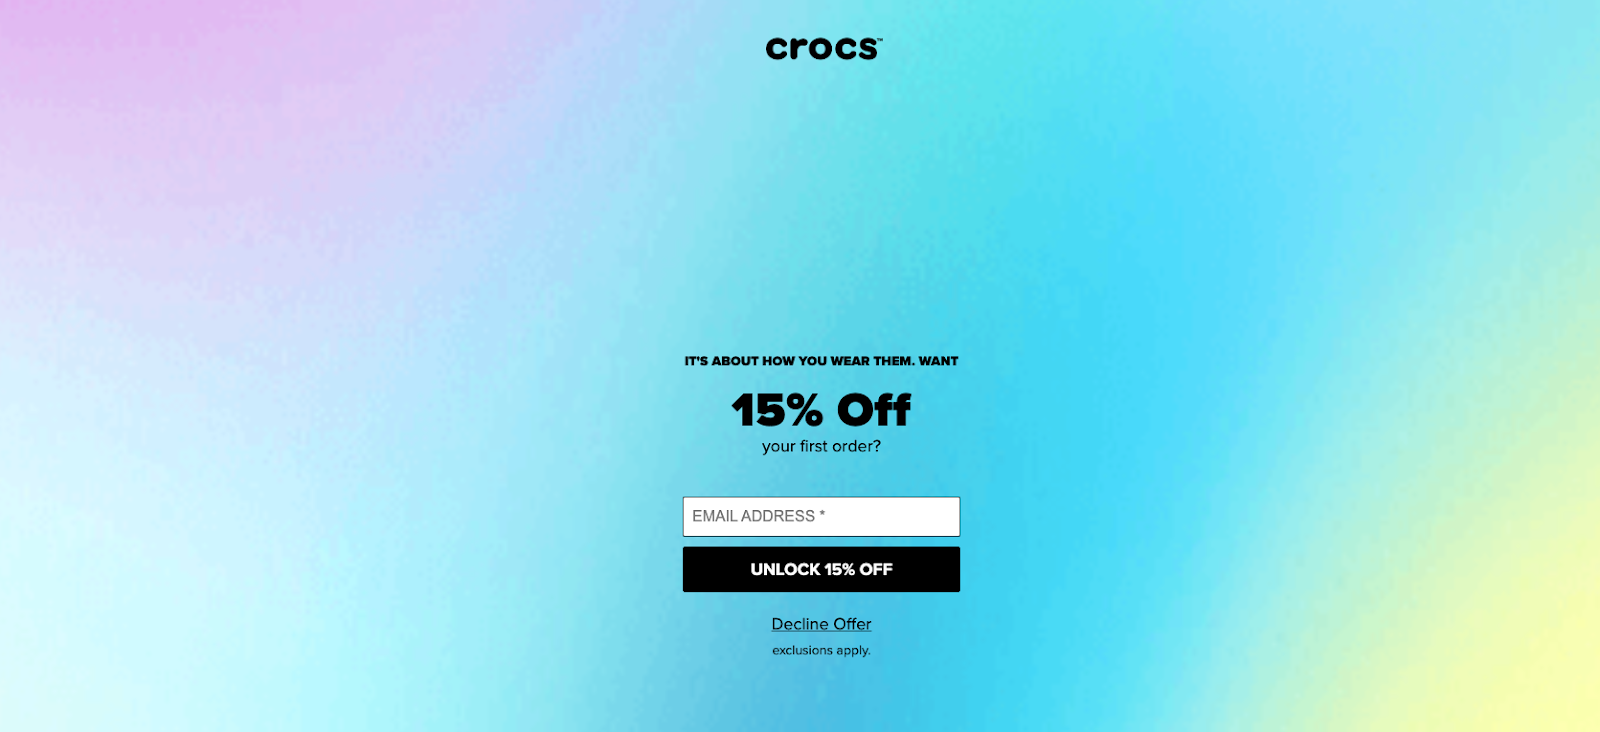 Captura de pantalla de la oferta emergente de Crocs